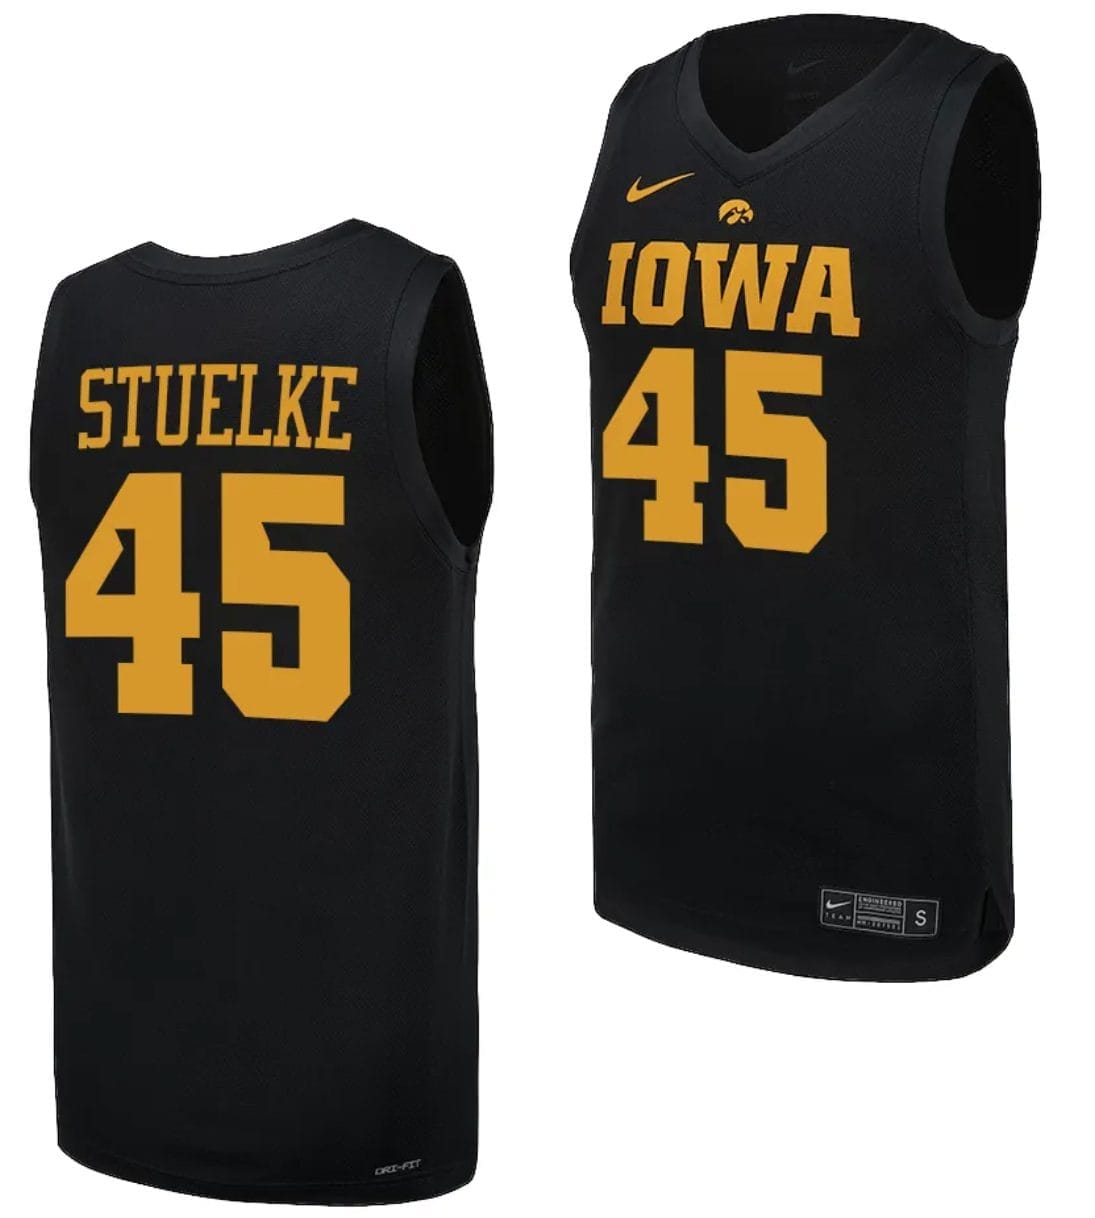 [Trending] Buy Hannah Stuelke Jersey #45 Iowa Hawkeyes Black